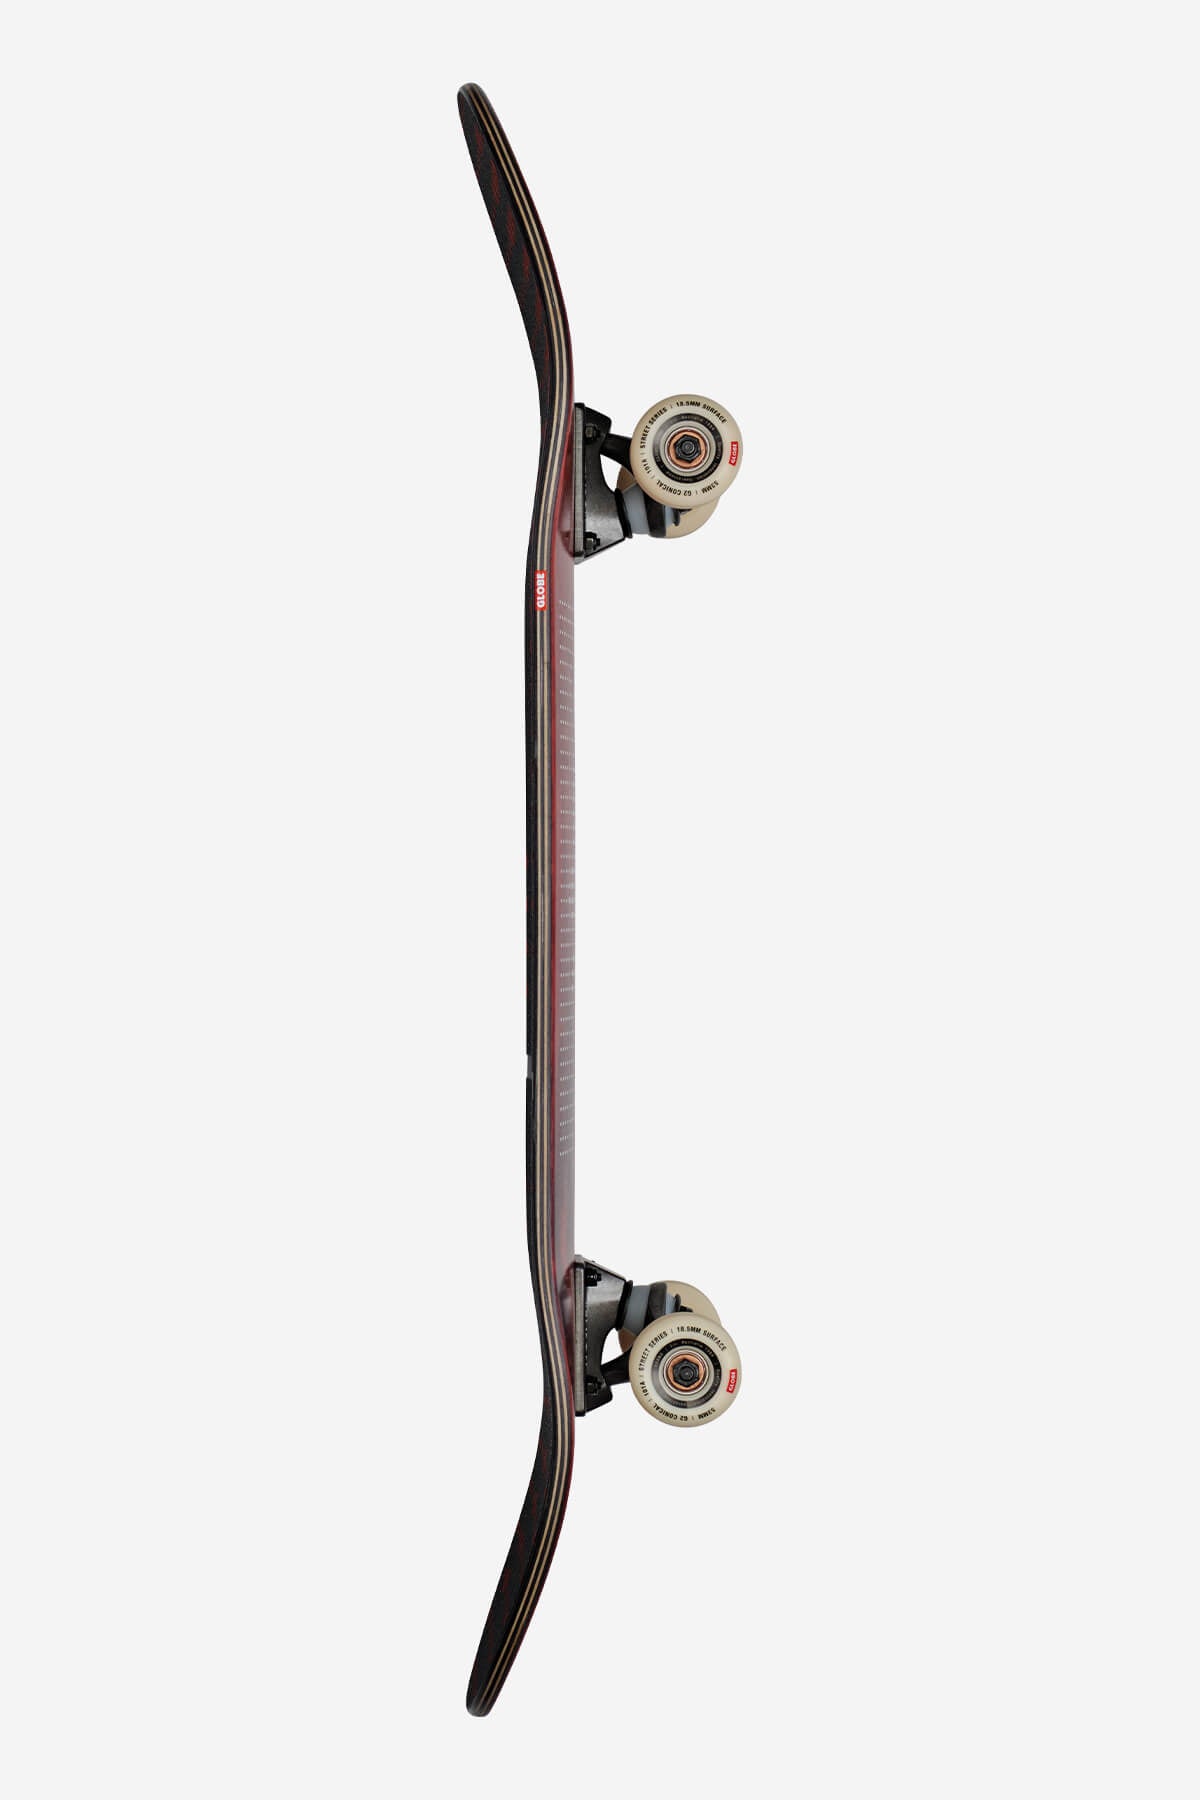 Globe - G2 Dot Gain - Rose - 8.125" Komplett Skateboard